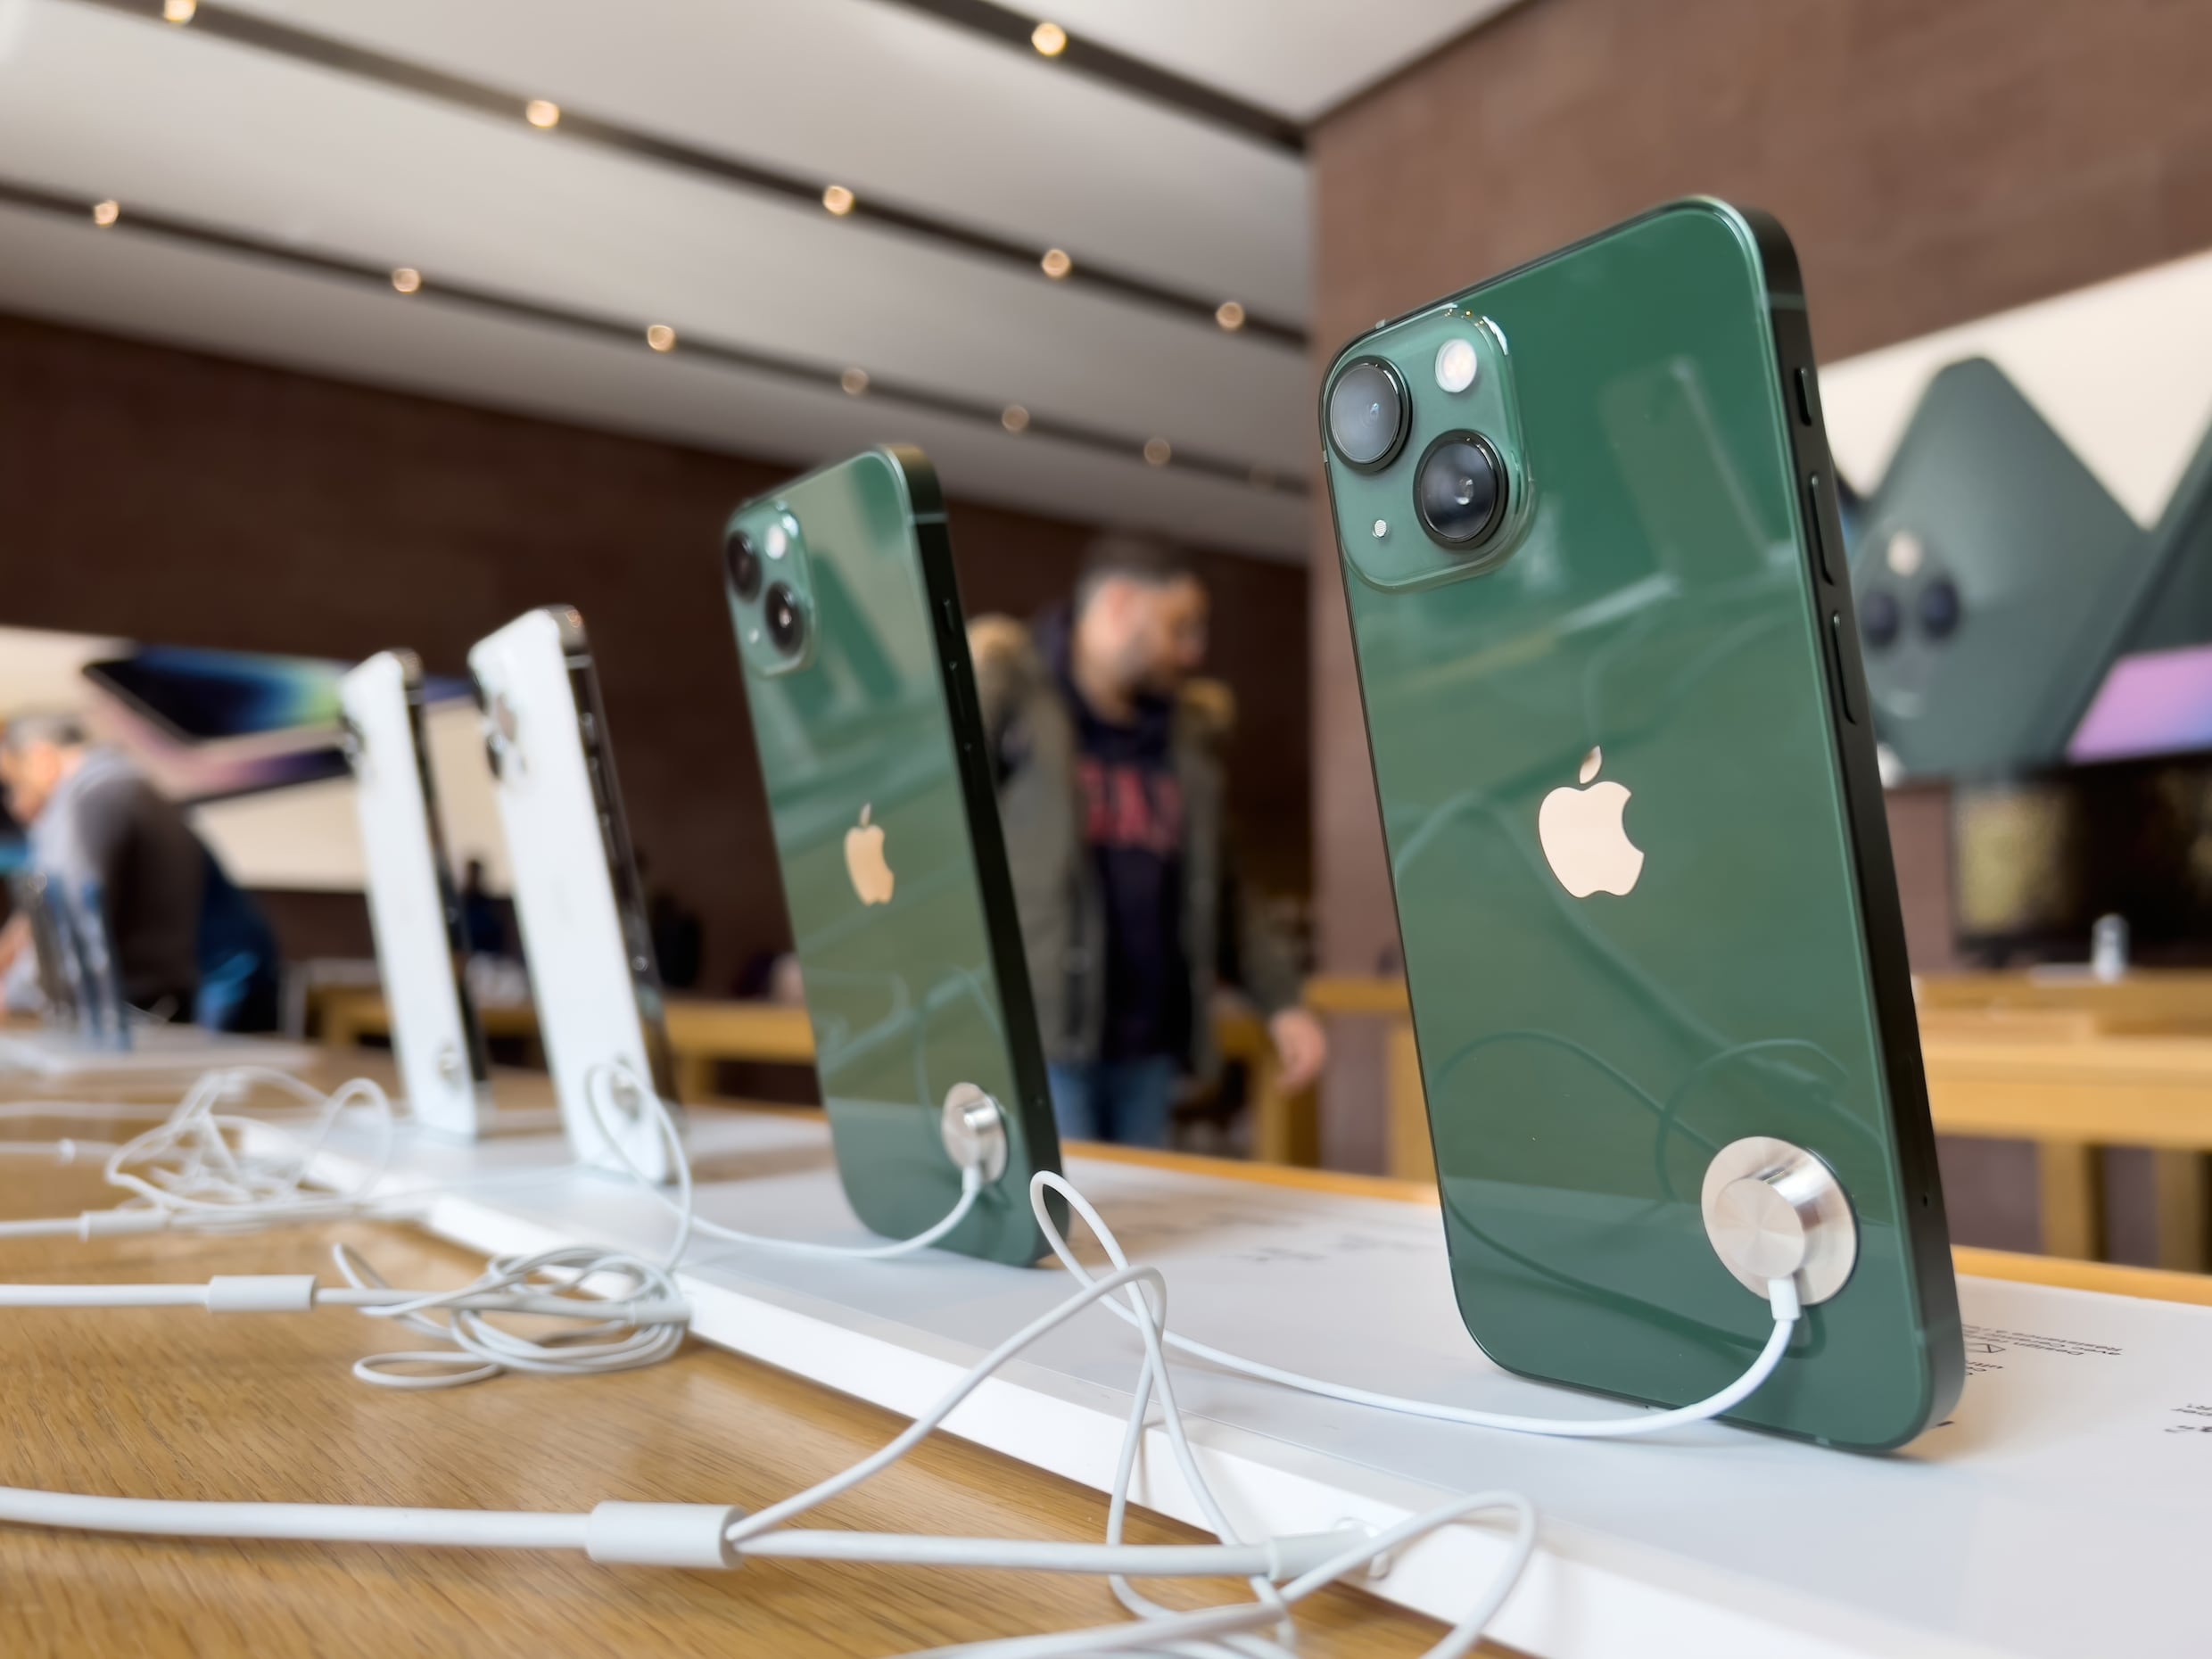 Beurskoers blijft dalen: Apple in jaar tijd 1 biljoen dollar minder waard door inflatie en chaos in China